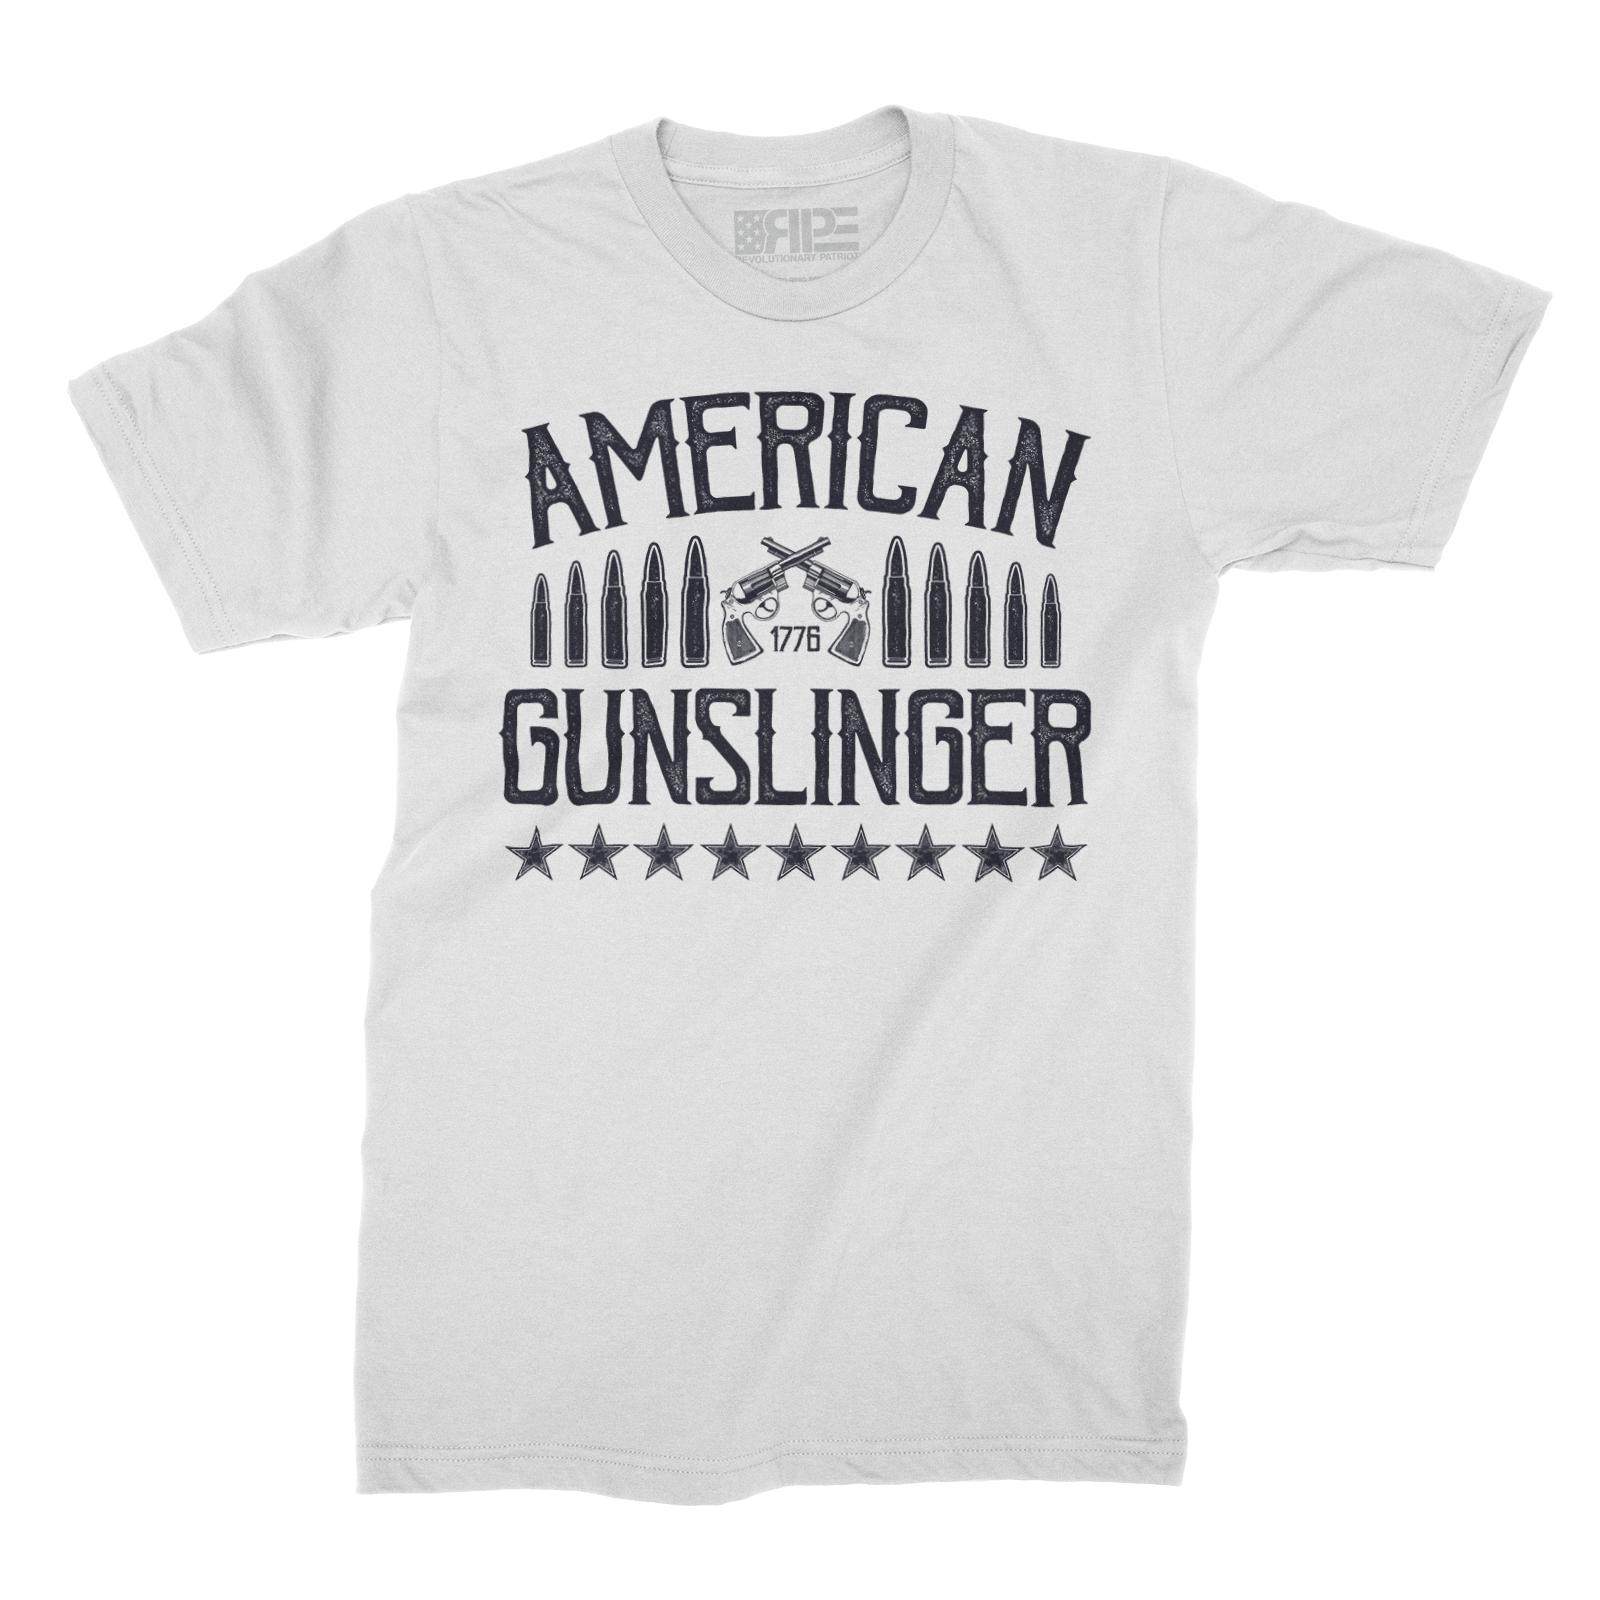 American Gunslinger (White) - Revolutionary Patriot